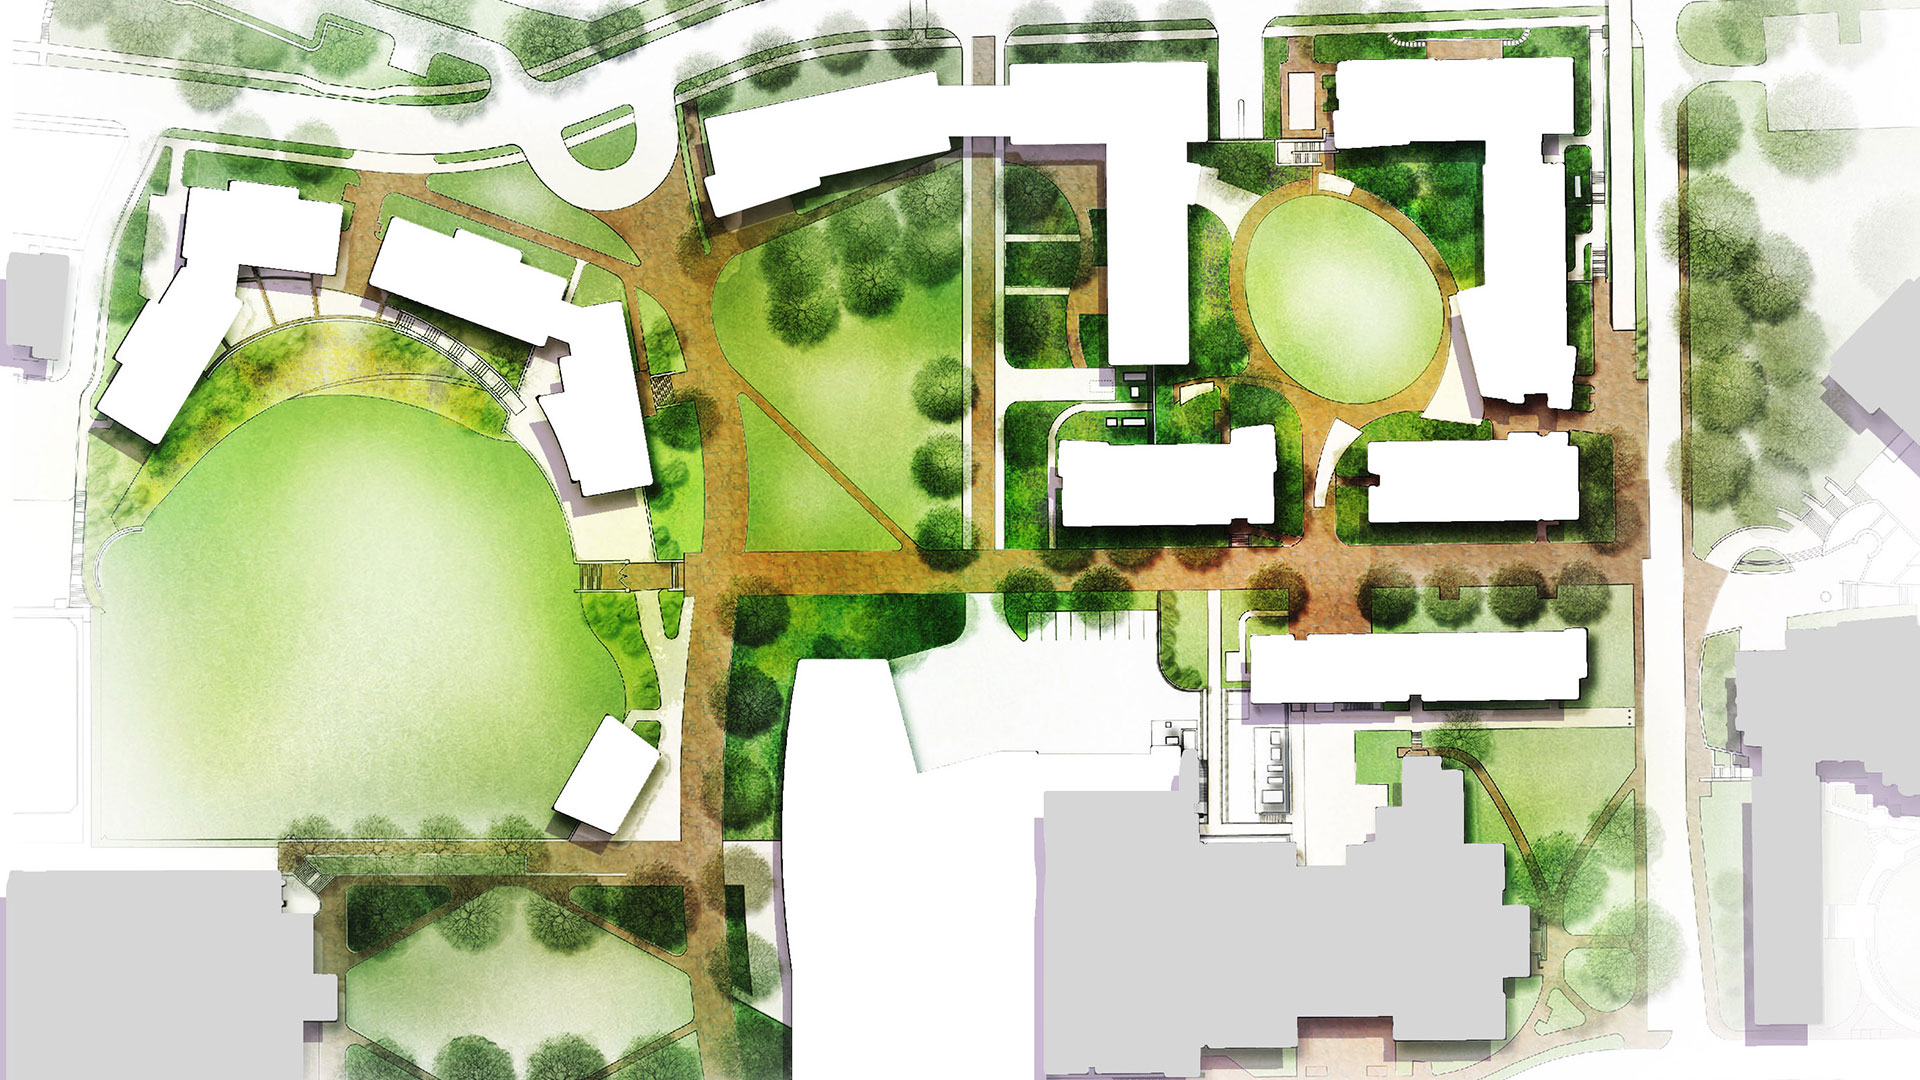 Campus Landscaping Design